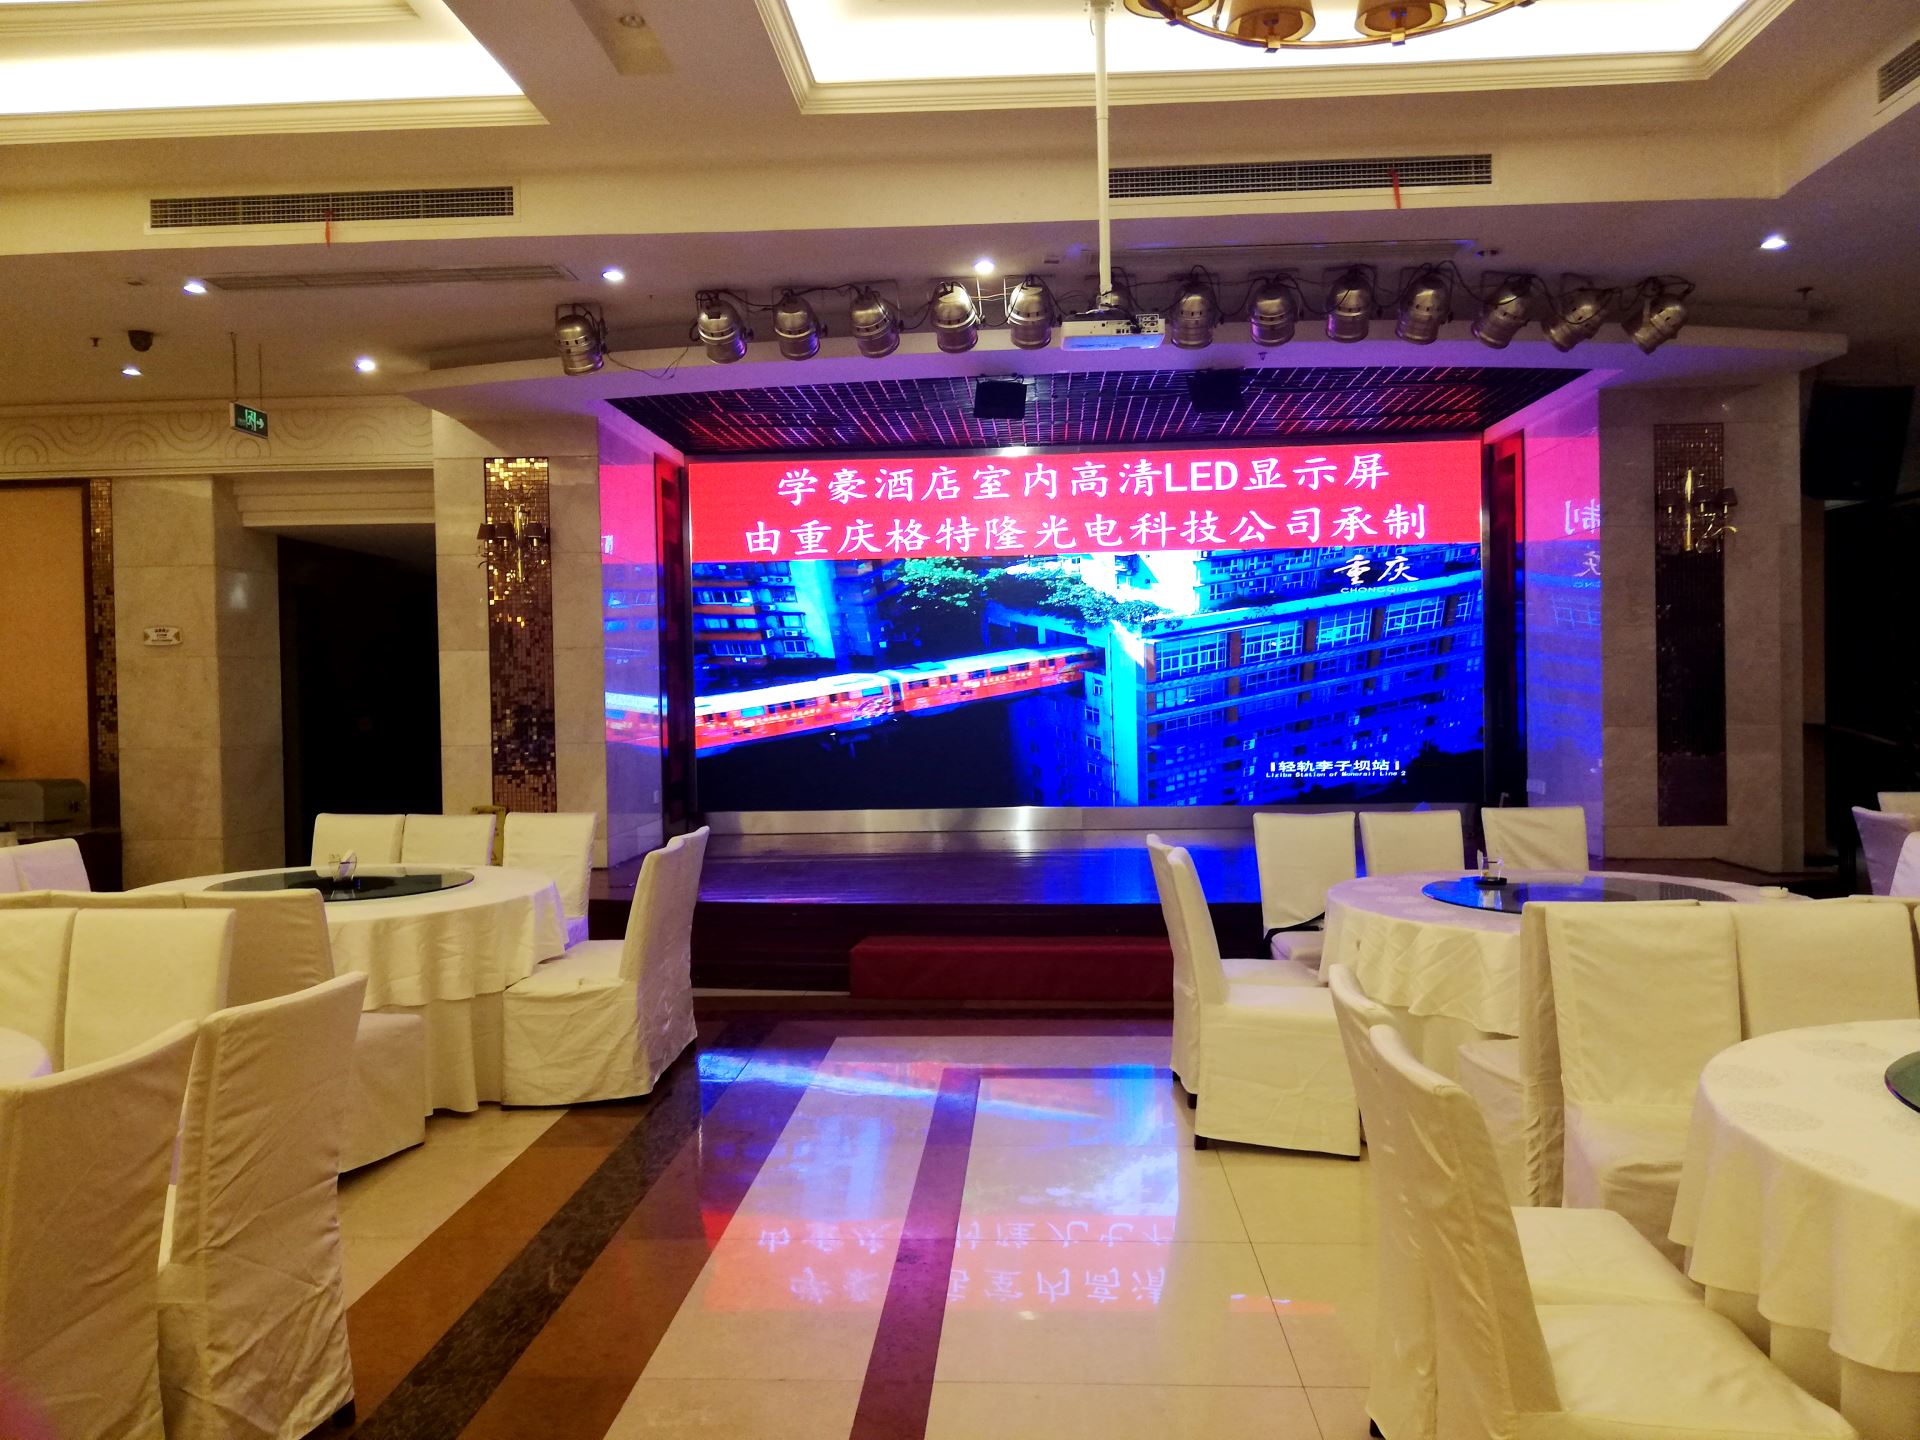 重庆五公里学豪酒店室内P3全彩LED显示屏